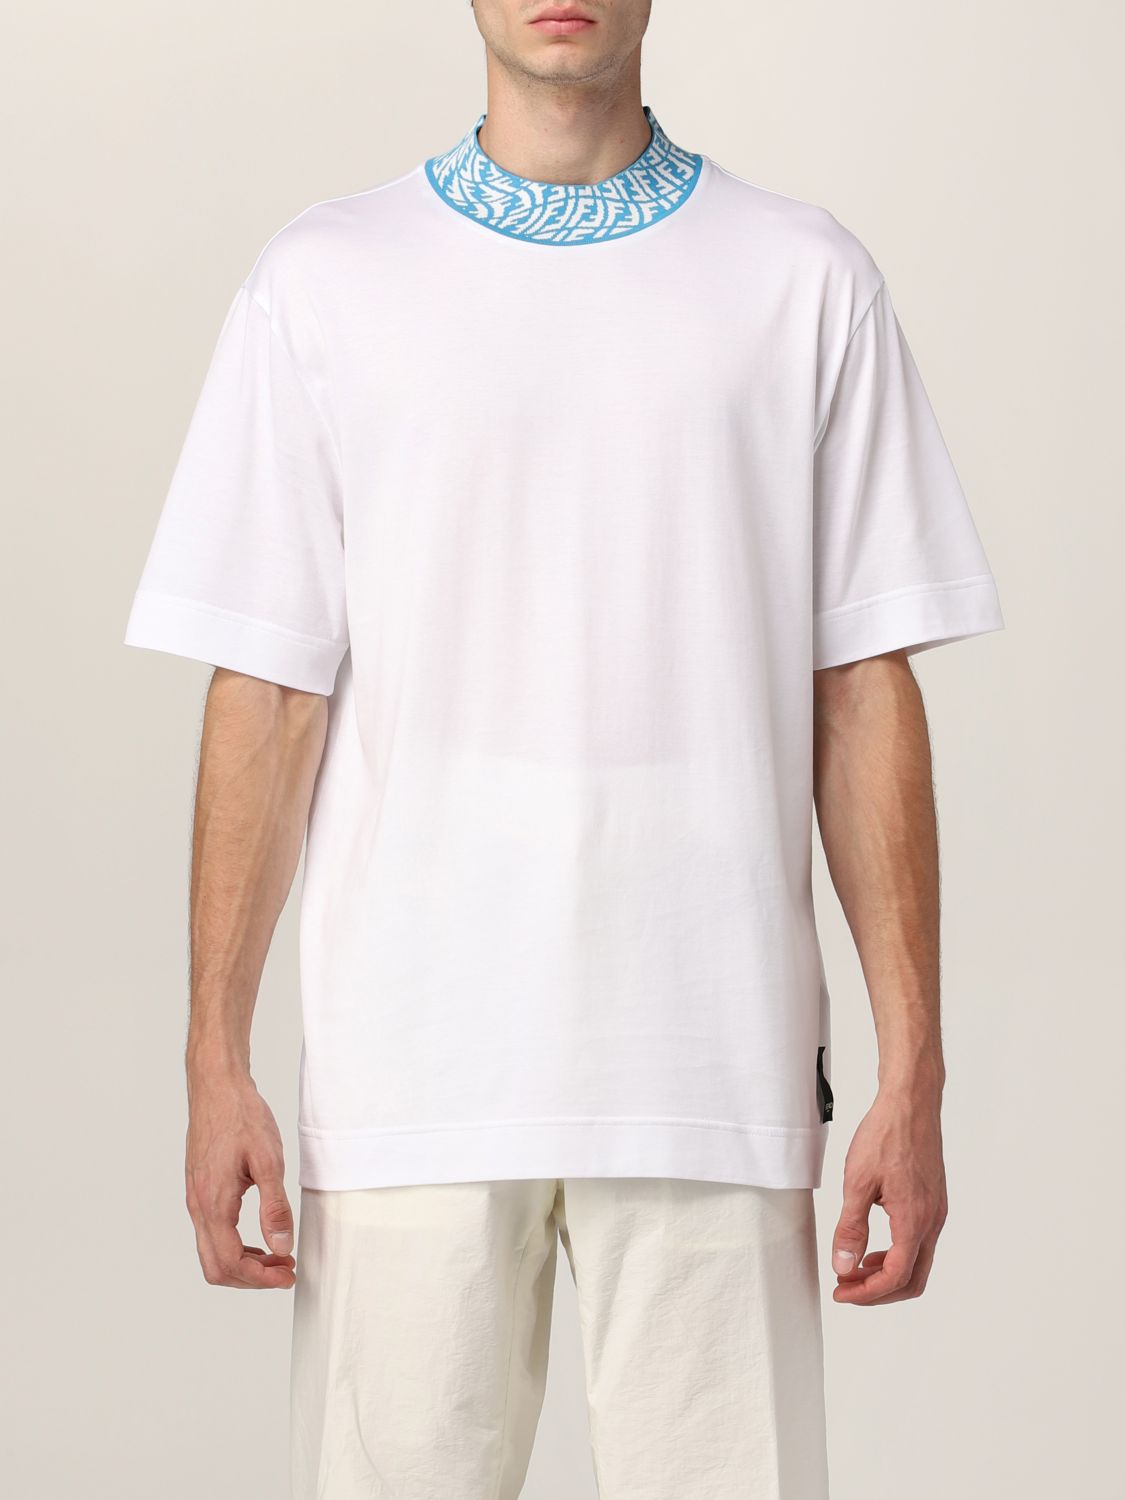 Vertigo Fendi cotton t-shirt with logo